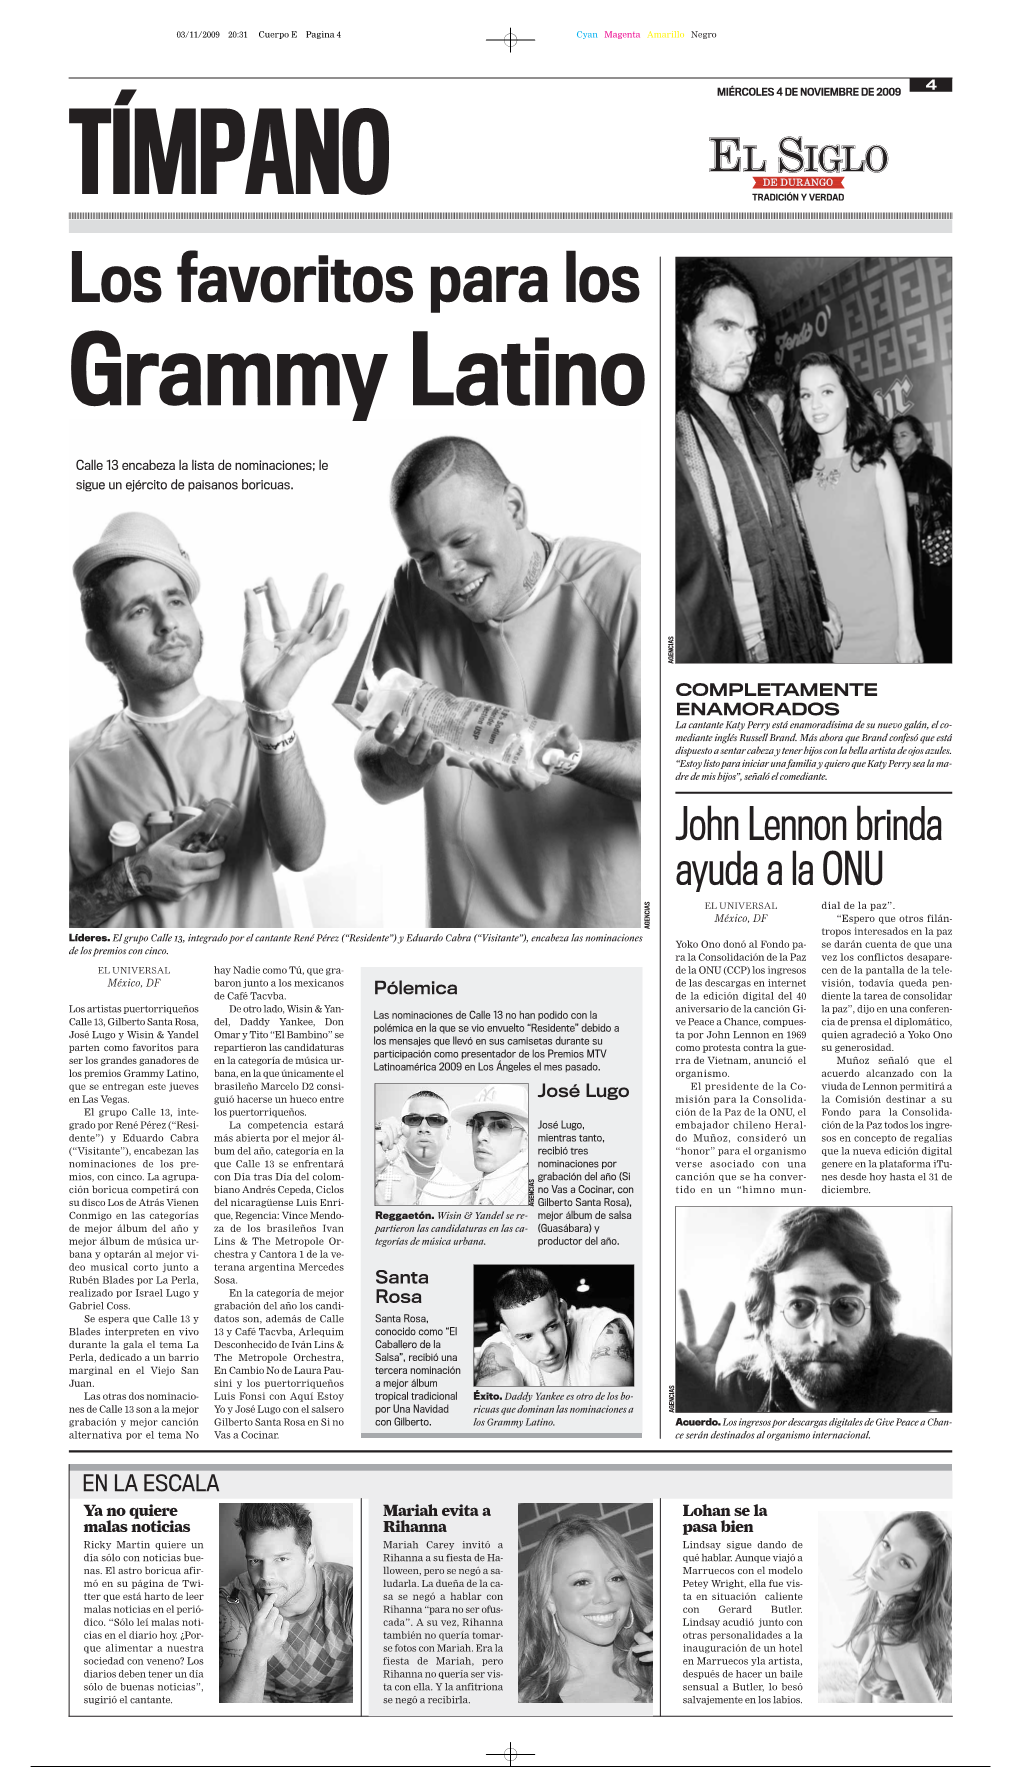 Los Favoritos Para Los Grammy Latino